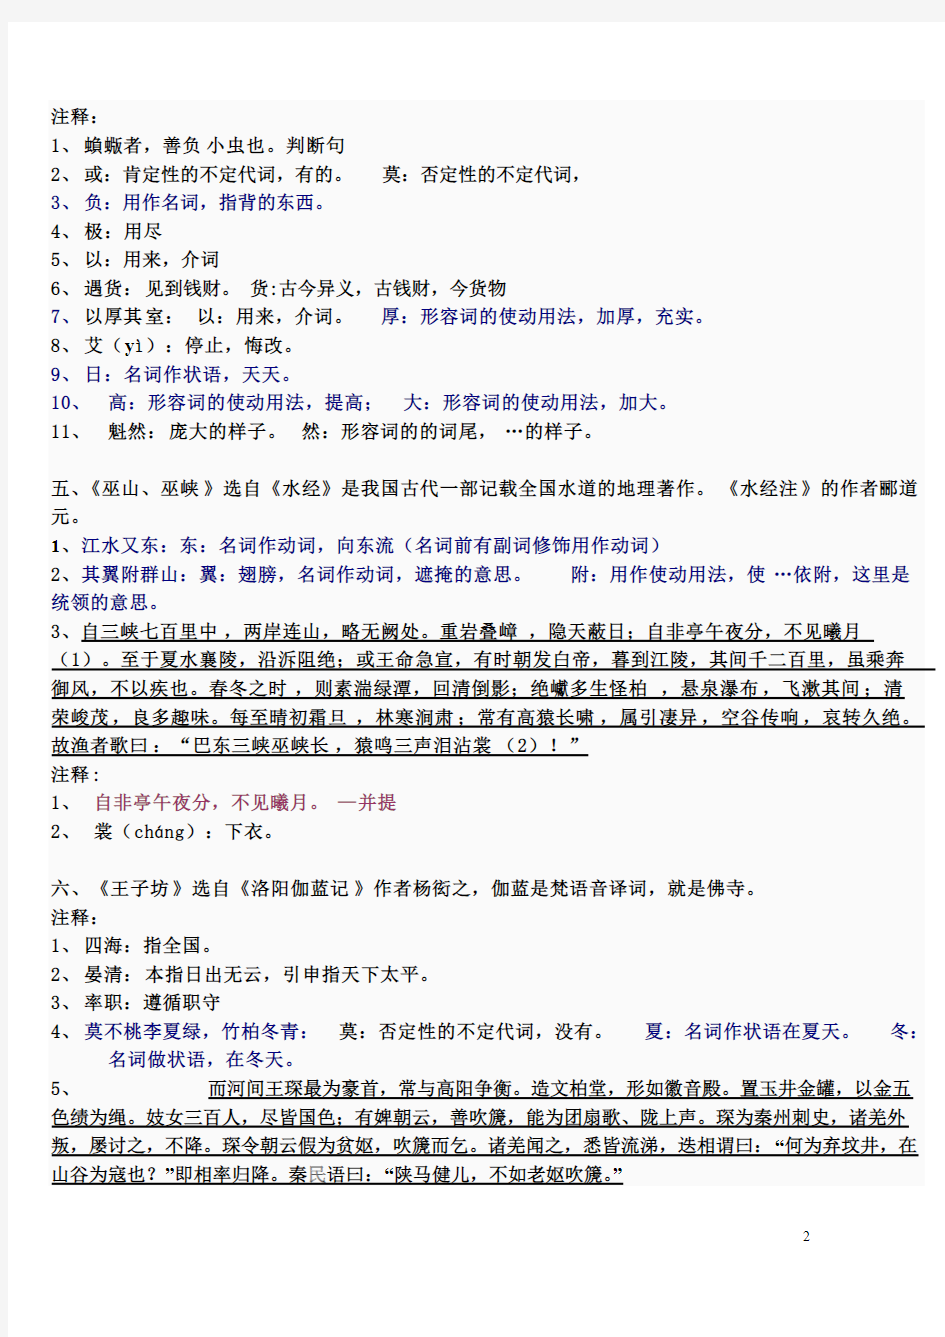 【免费下载】总结古代汉语上册新郭锡良